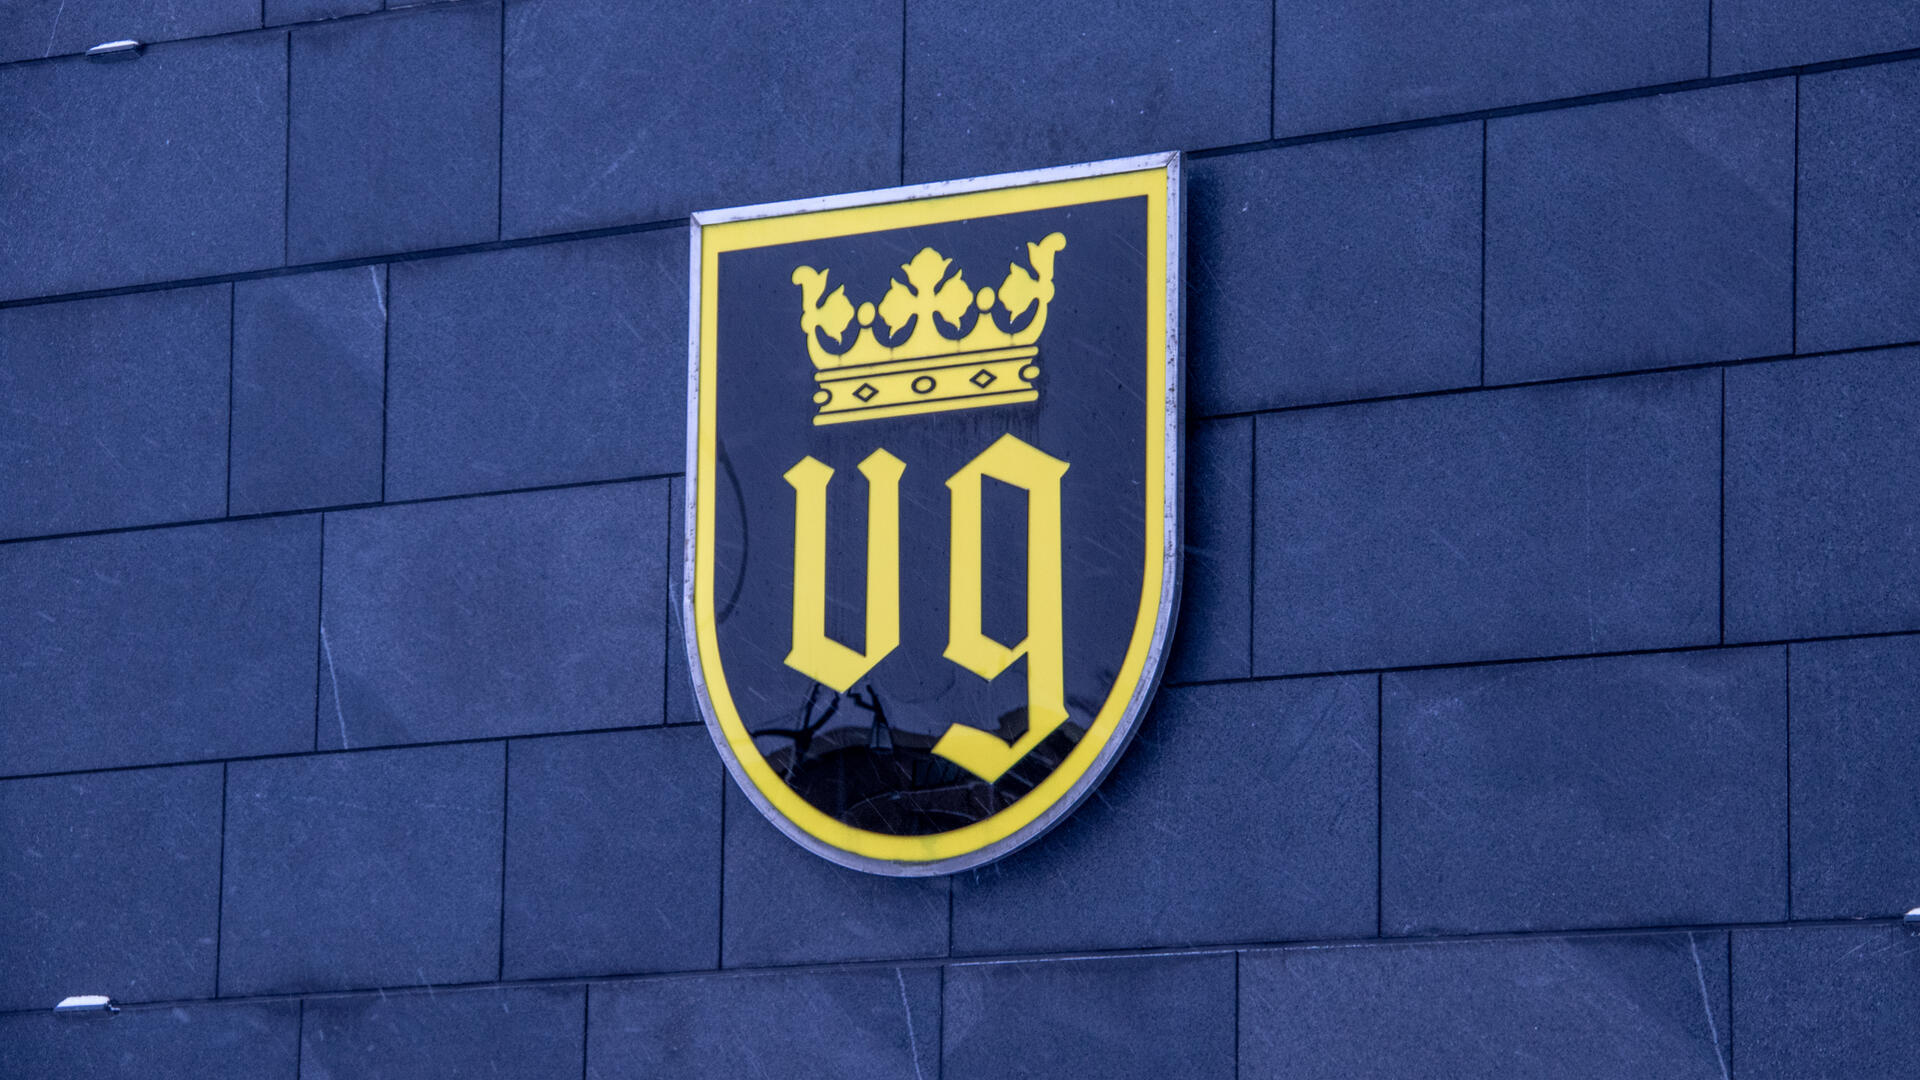 Naantalin musta-keltaisessa vaakunassa on kirjaimet VG sekä niiden yllä kruunu. Vaakuna kaupungintalon edustalla, seinässä.